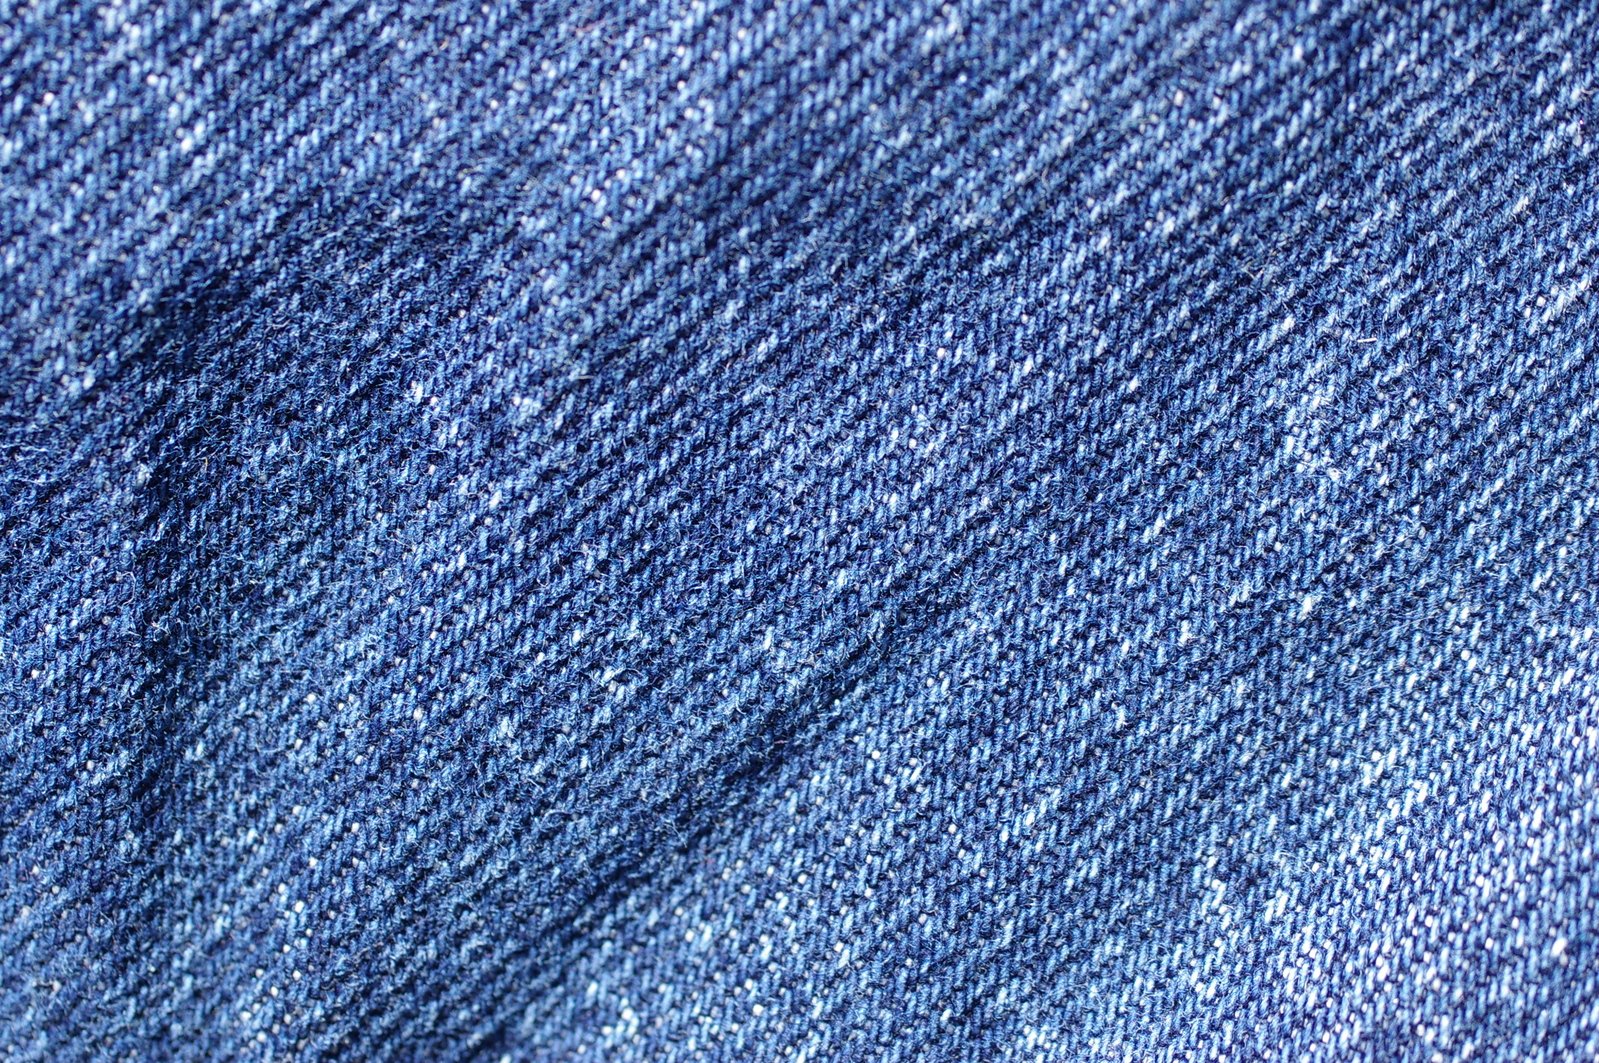 Is denim. Джинс Блю (at8756). Джинс Блю 8657. Джинсовая ткань. Текстура джинсовой ткани.